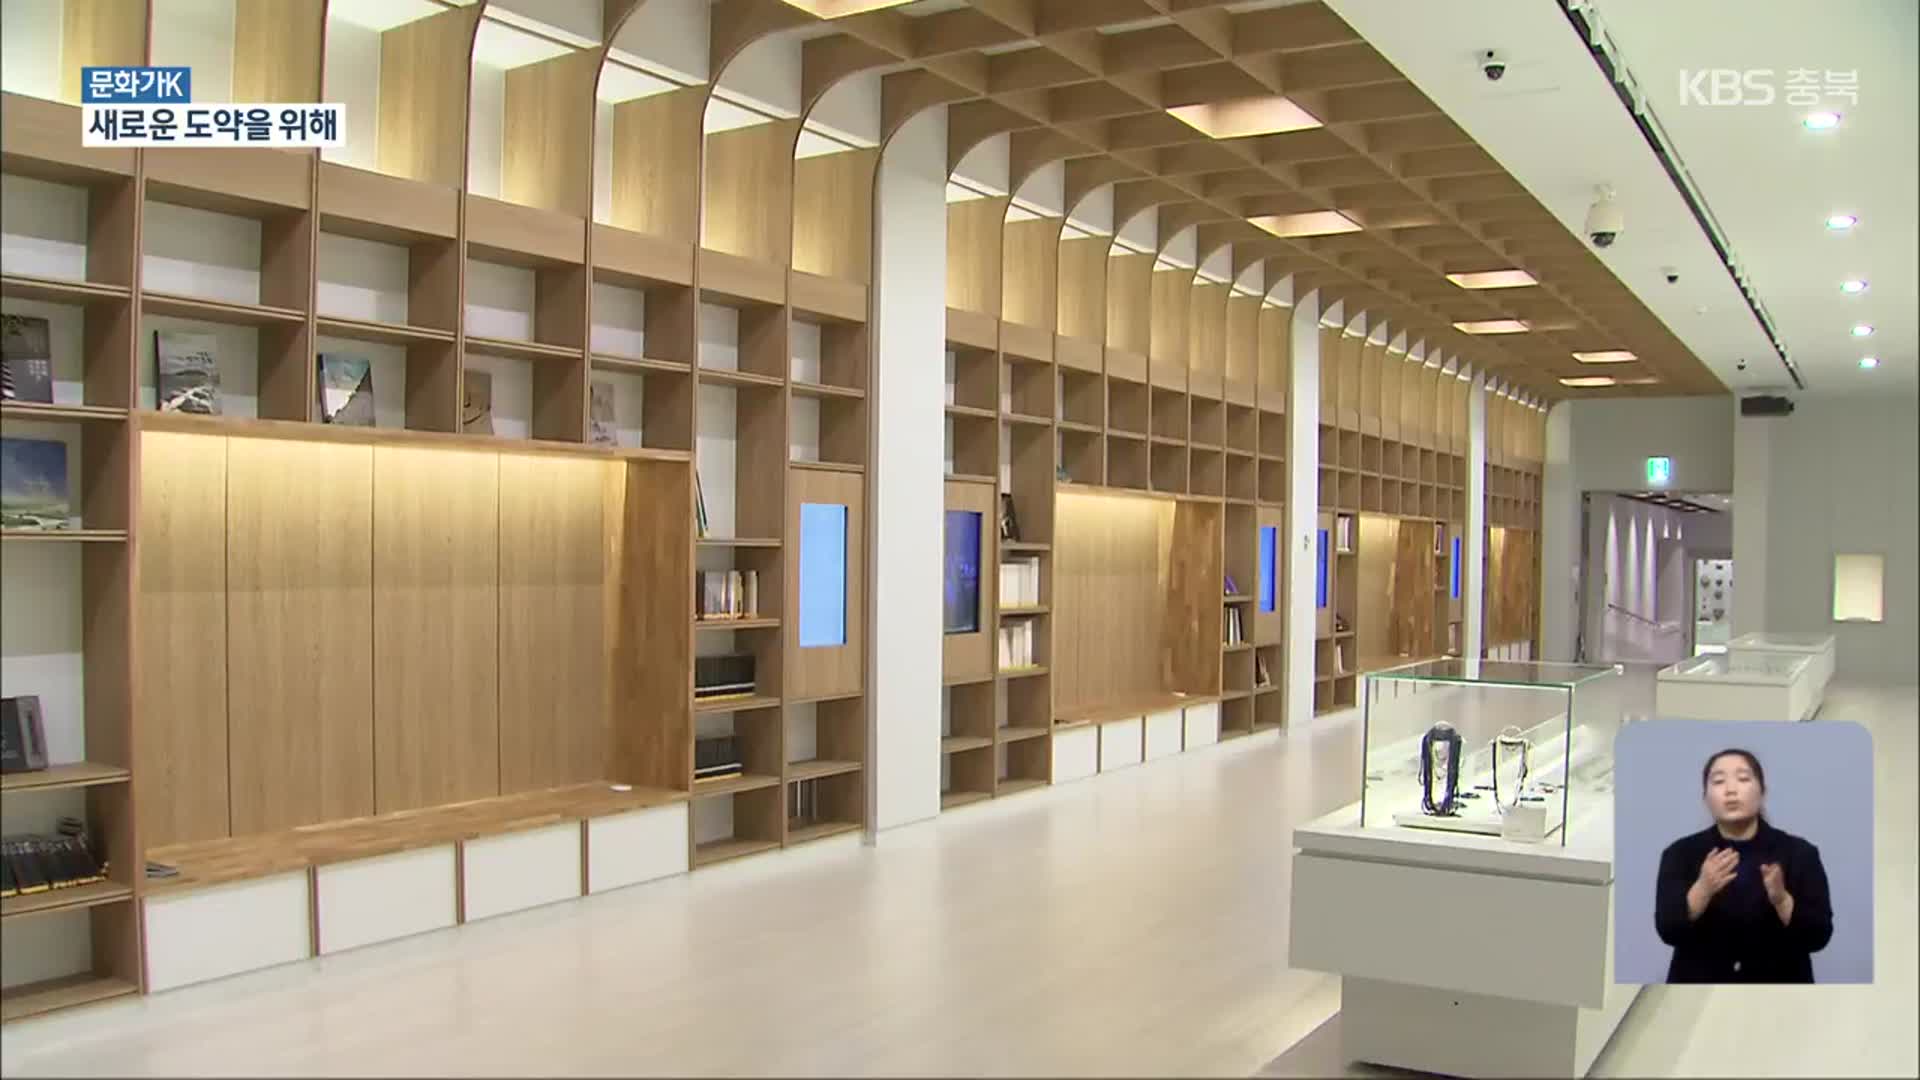 [문화가K] 국립청주박물관 새 도약…역대급 특별전·시설 개선